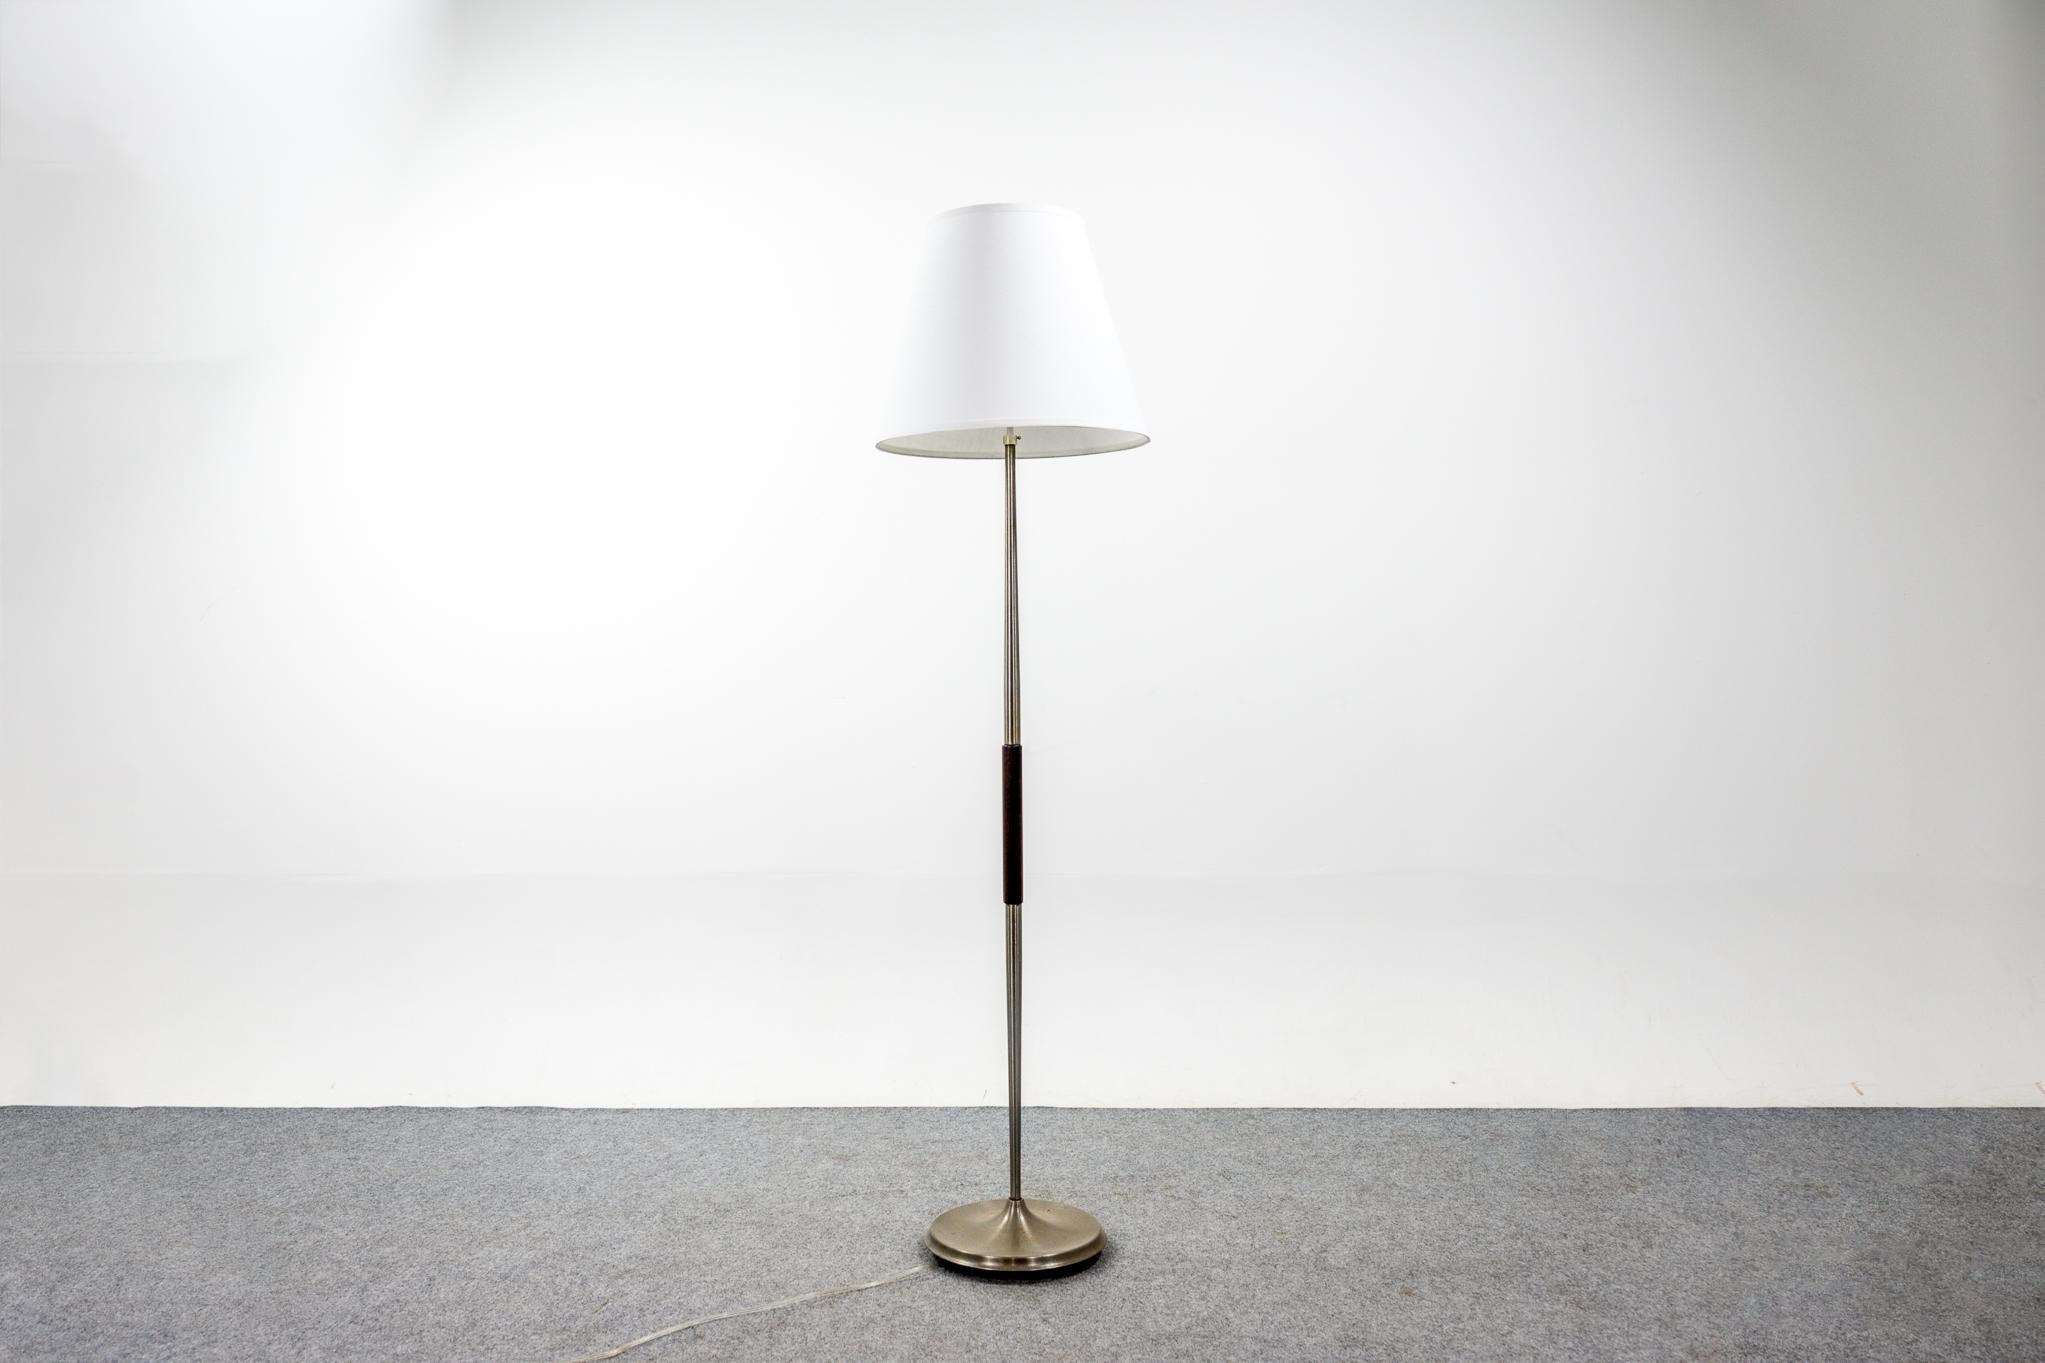 Lampadaire danois en palissandre et métal, vers les années 1960. Teinte de qualité sur mesure, en accord avec l'esthétique vintage. L'ampoule et la fixation à trois lumières permettent à l'utilisateur d'ajuster la luminosité de la lampe pour